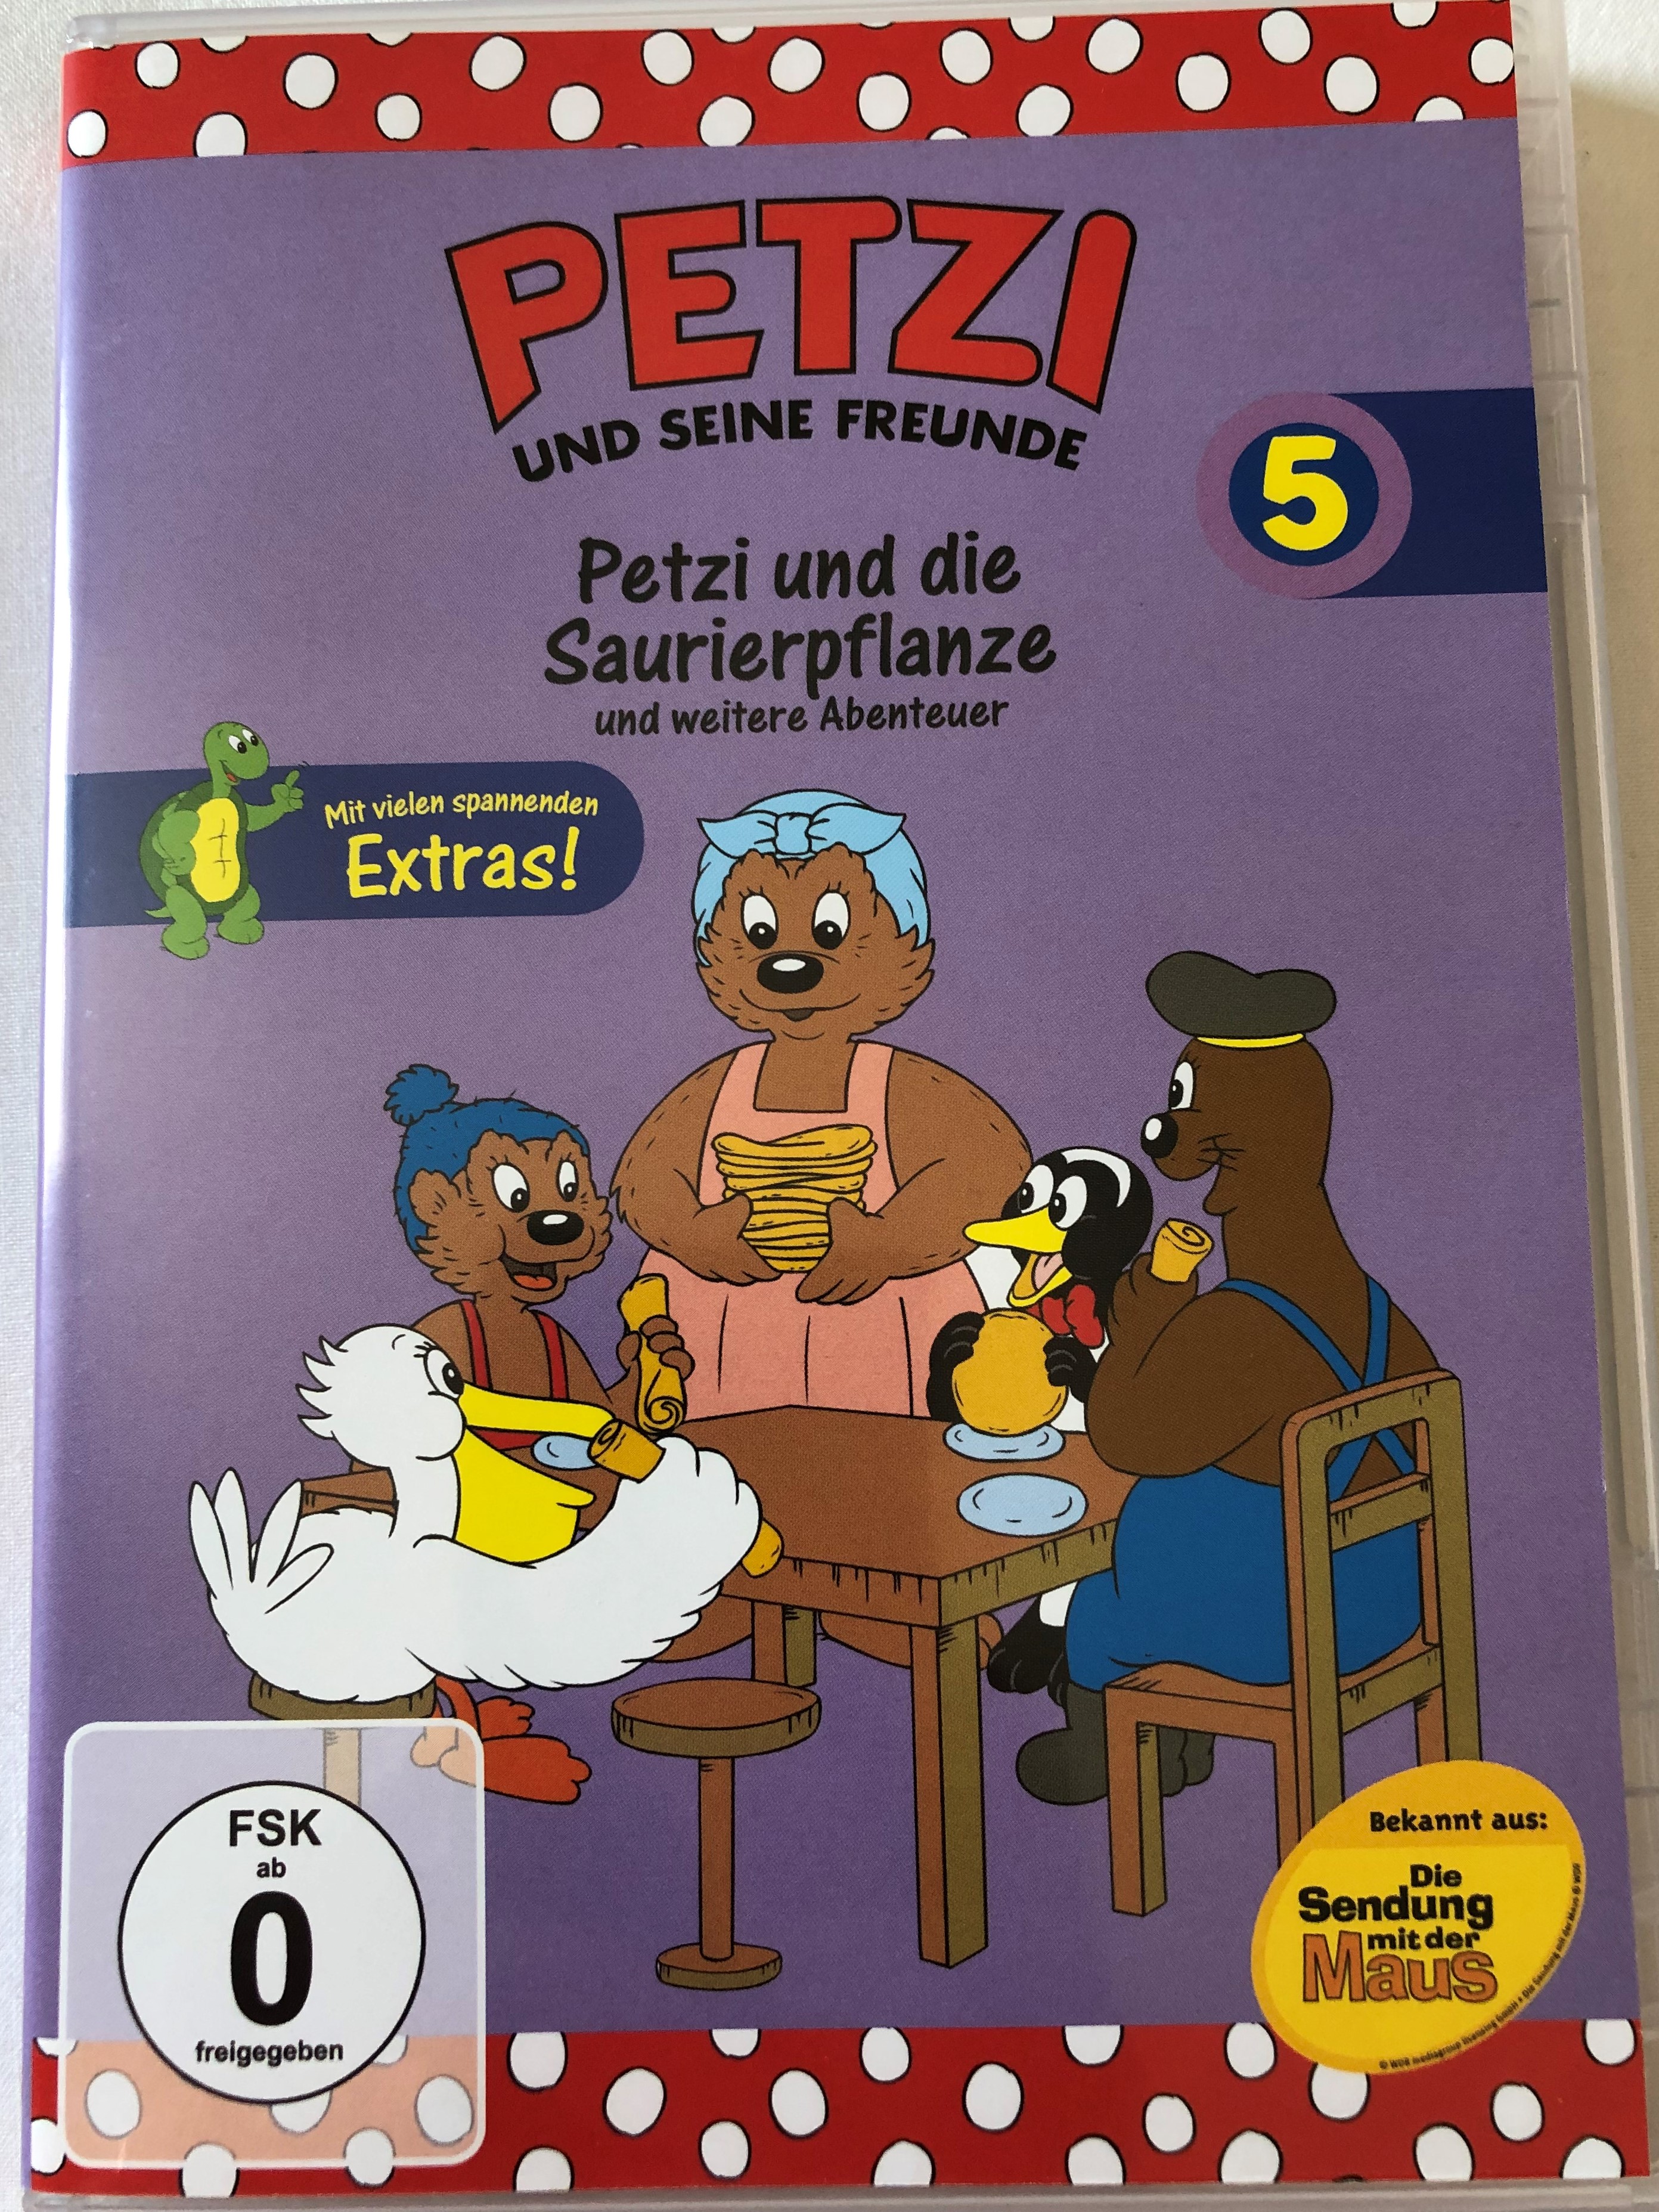 petzi-und-seine-freunde-5.-dvd-2004-petzi-and-his-friends-petzi-und-die-saurierpflanze-und-weitere-abenteuer-8-episodes-on-disc-classic-german-cartoon-1-.jpg